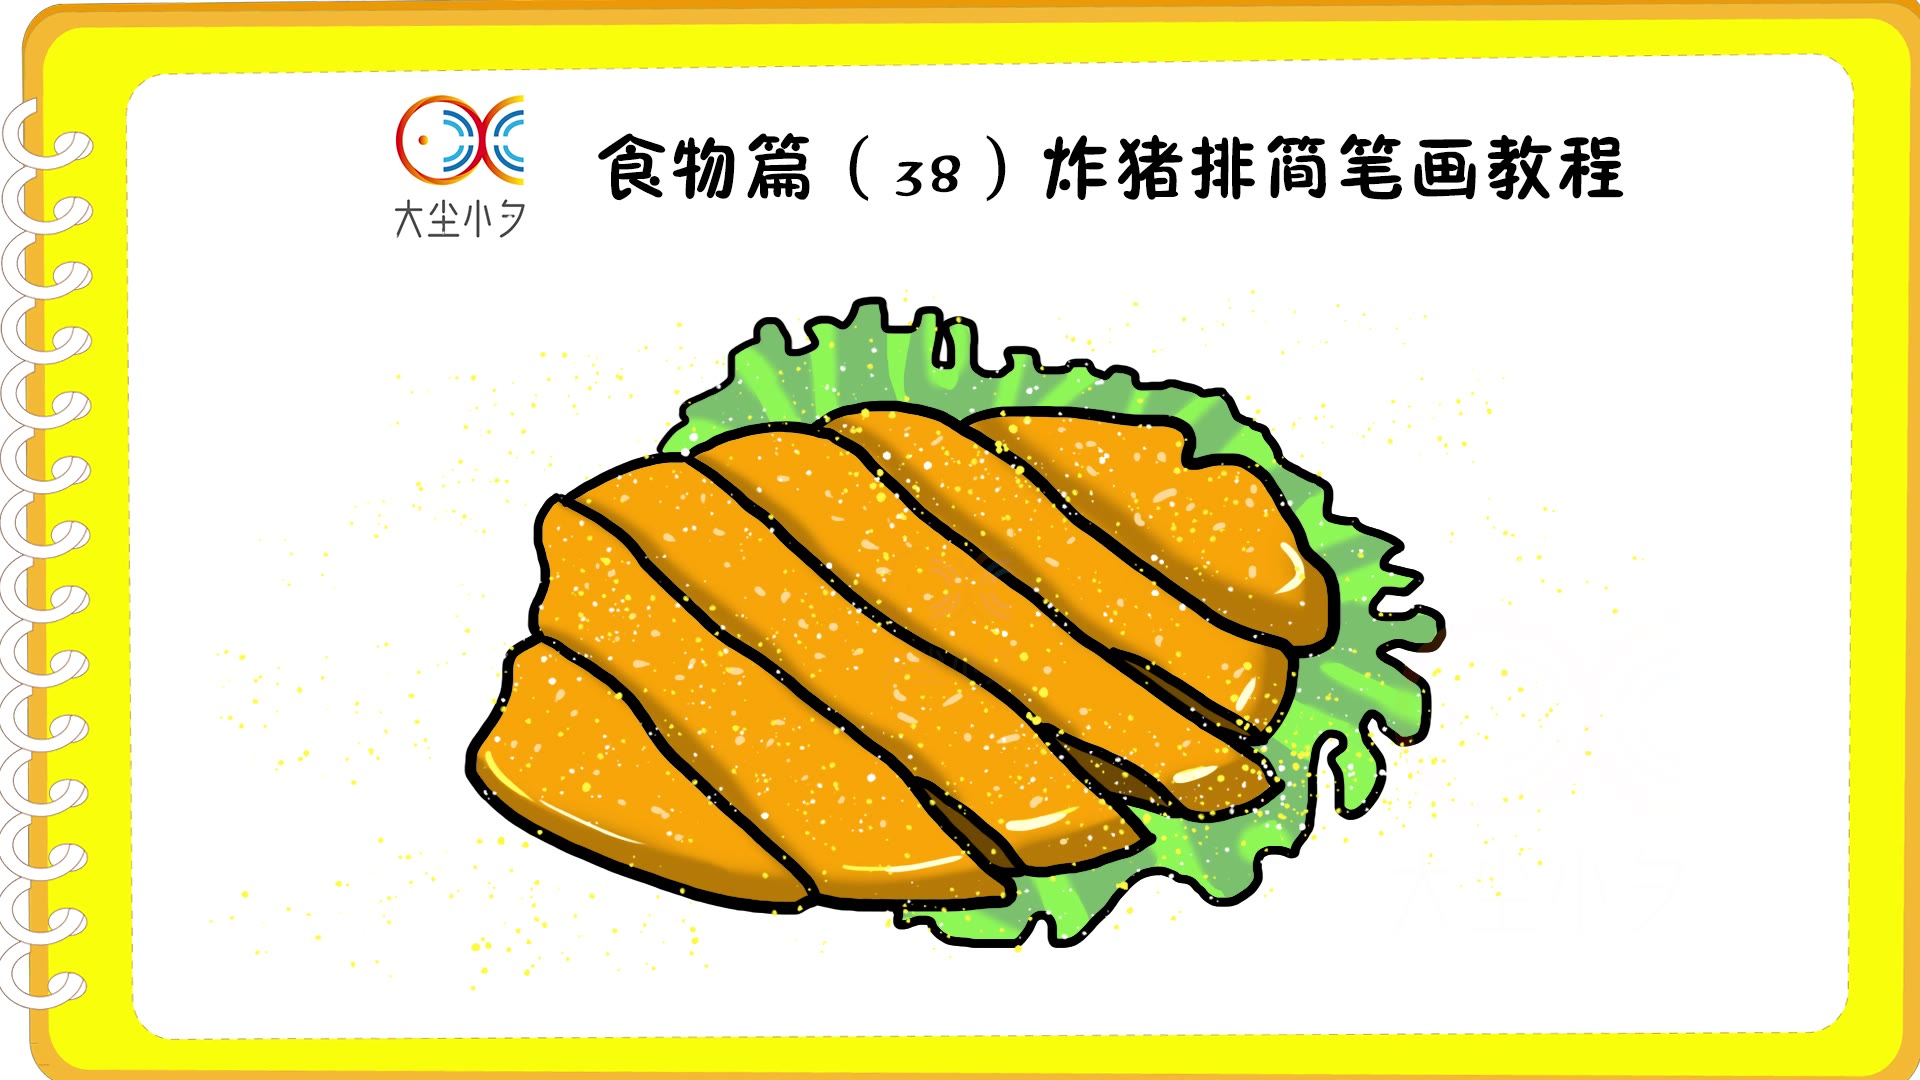 食物篇(38)炸猪排简笔画教程